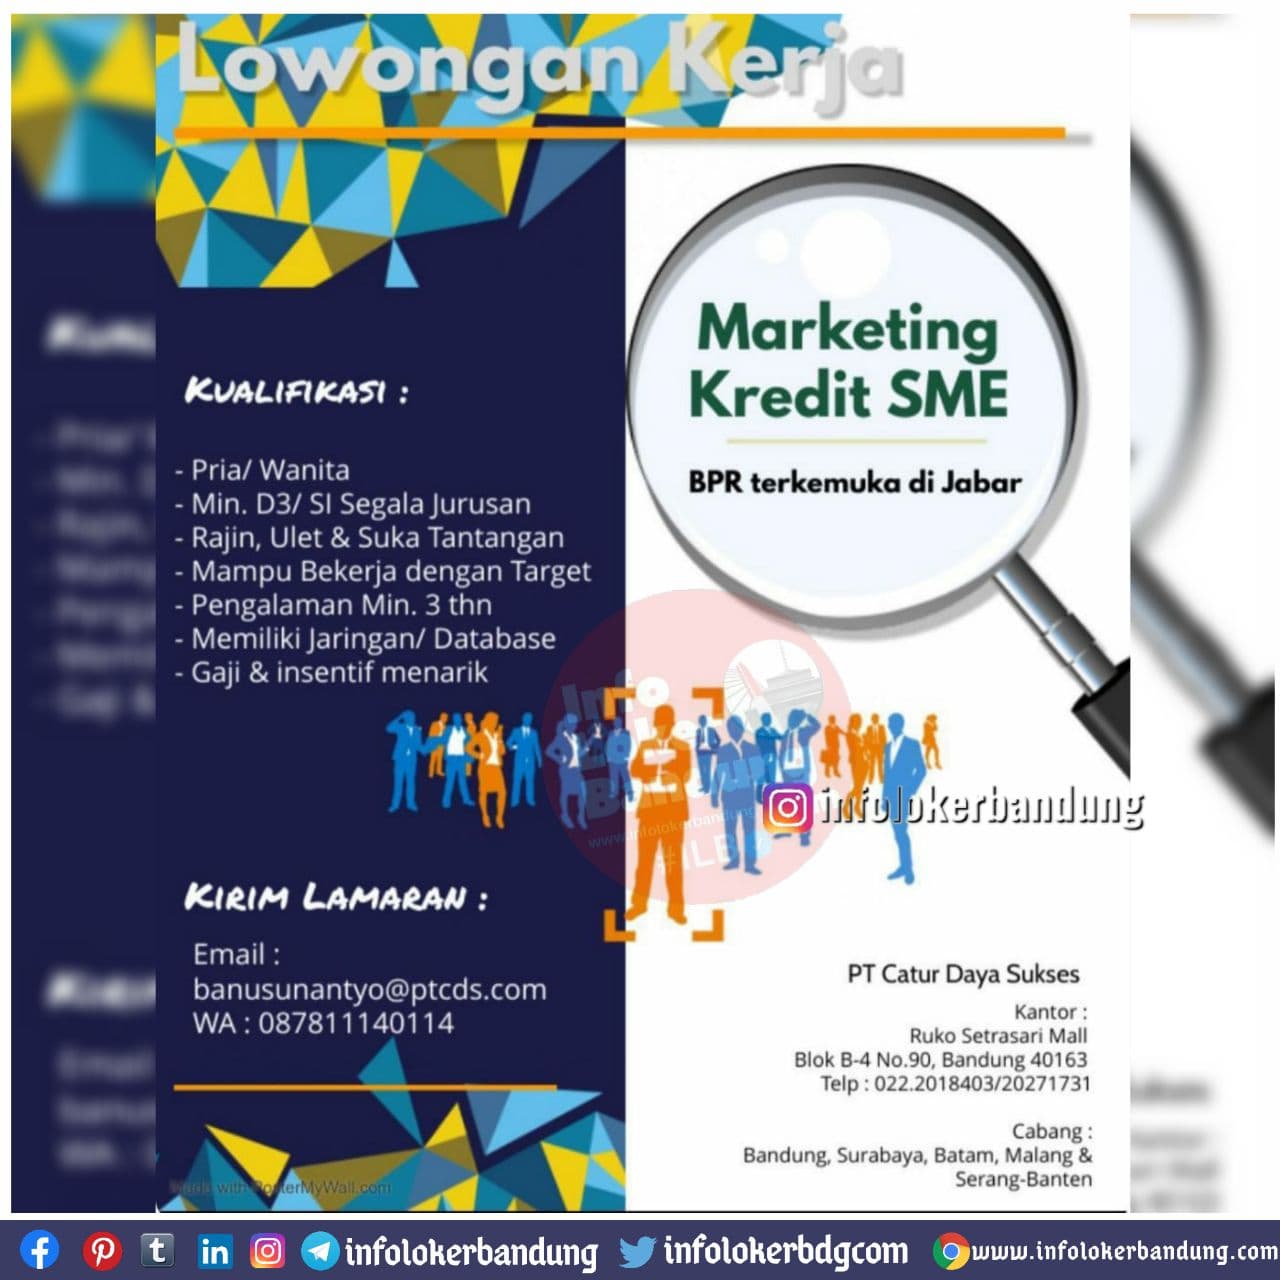 Lowongan Kerja Marketing Kredit SME PT. Catur Daya Sukses Bandung Desember 2020